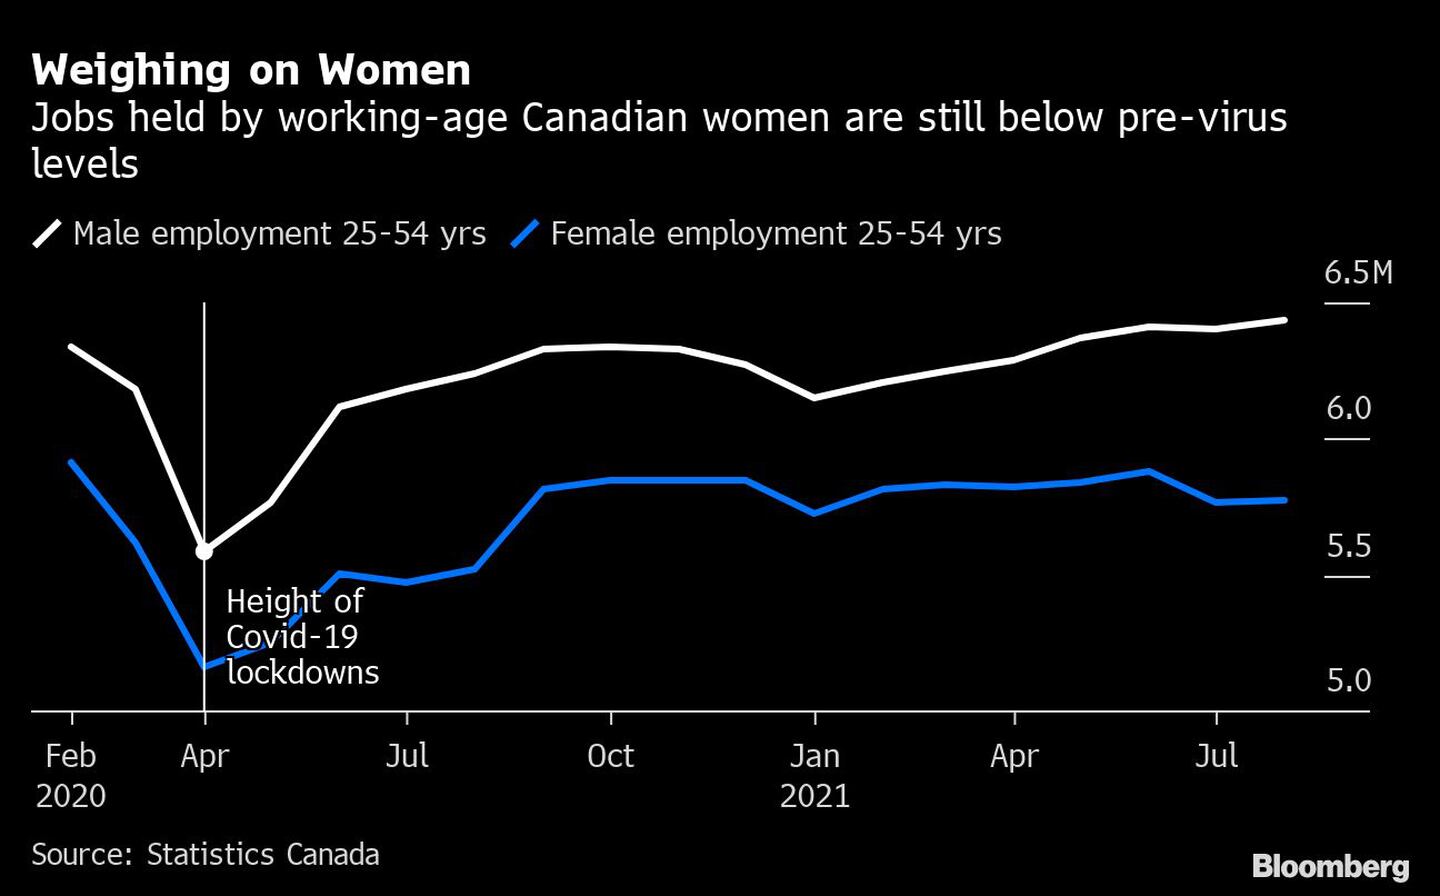 El peso en las mujeres
Los puestos de trabajo de las mujeres canadienses en edad de trabajar siguen estando por debajo del nivel anterior al virus
Blanco: Empleo masculino 25-54 años   
Azul: Empleo femenino 25-54 años
Línea: Altura de los cierres de Covid-19dfd